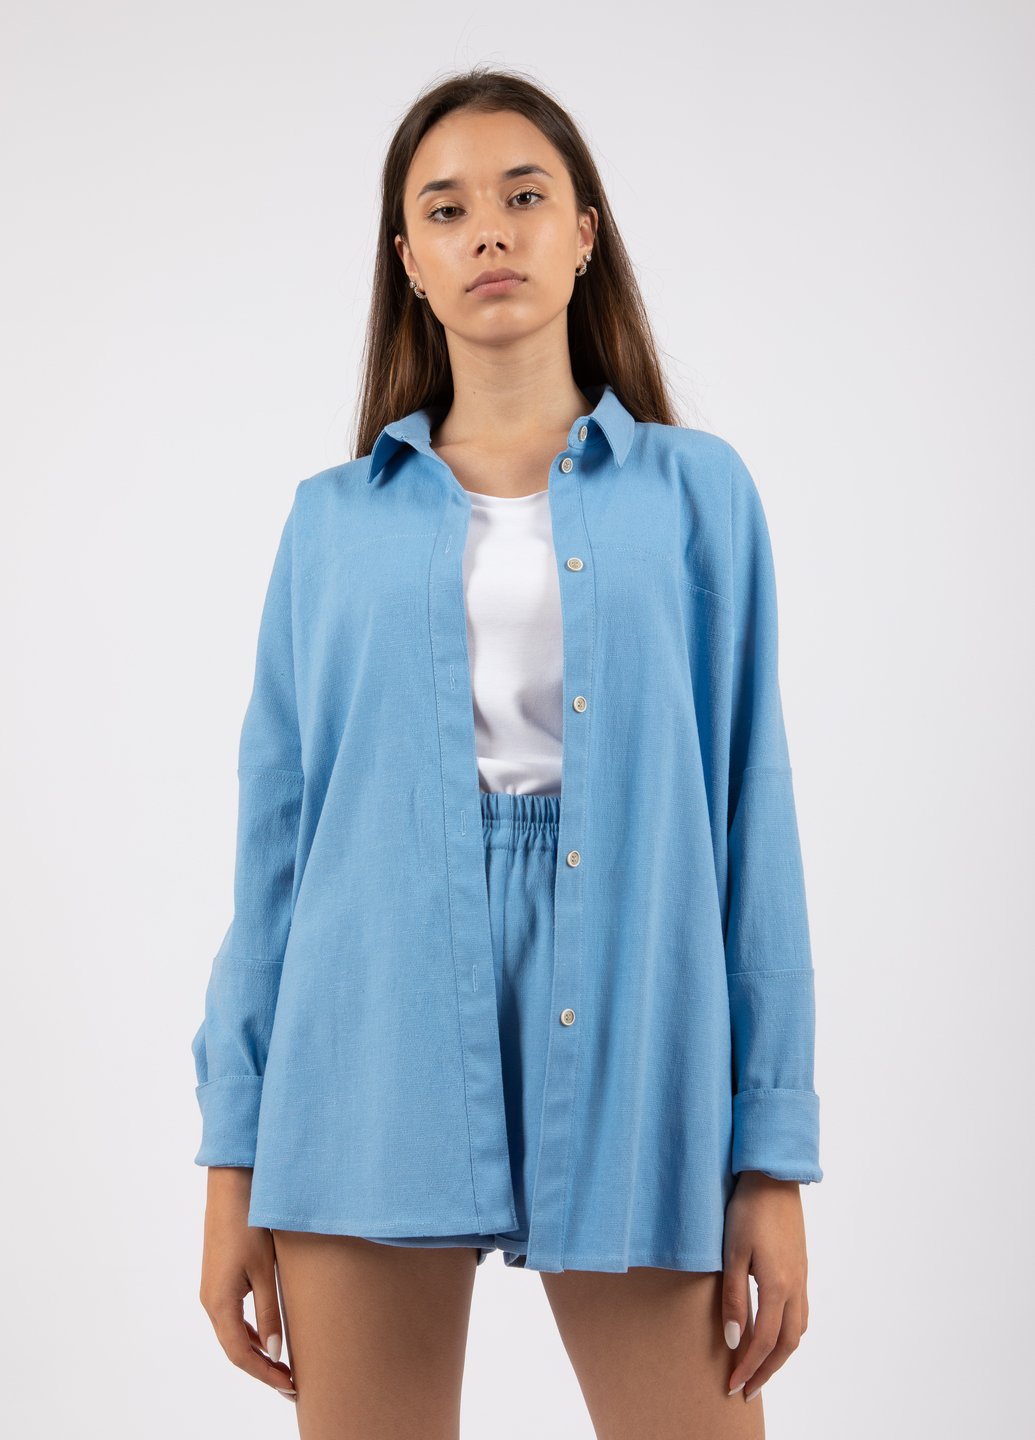 Купить Оверсайз льняная рубашка женская Merlini Барбадос 200000040 - Голубой, 42-44 в интернет-магазине